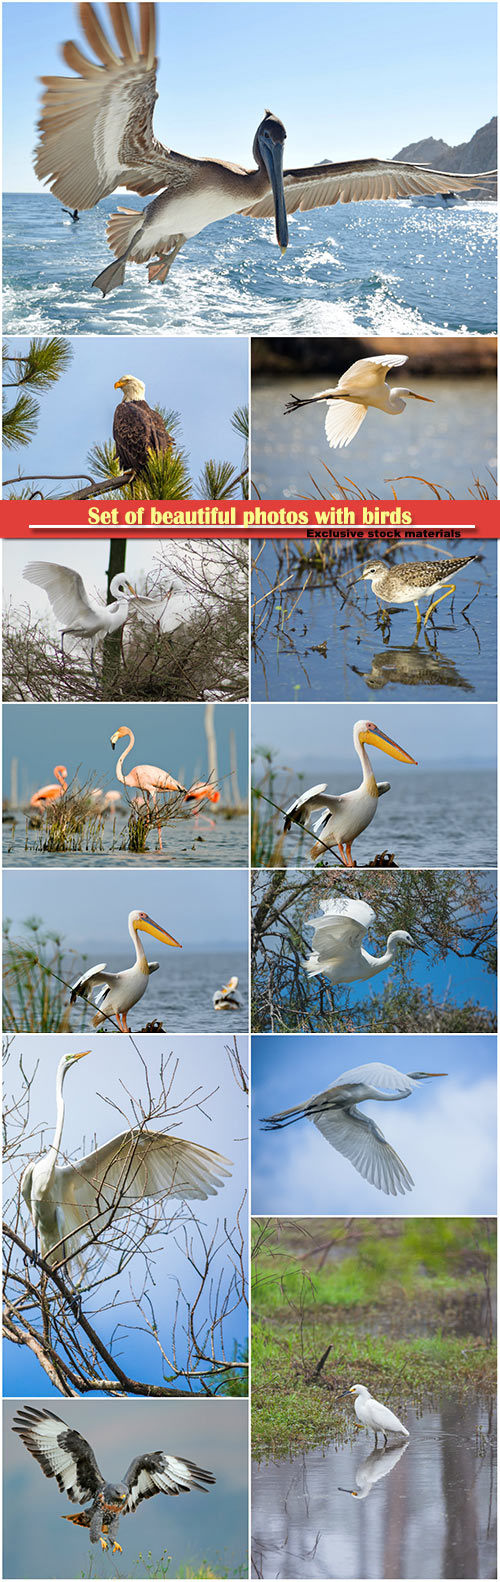 Set of beautiful photos with birds